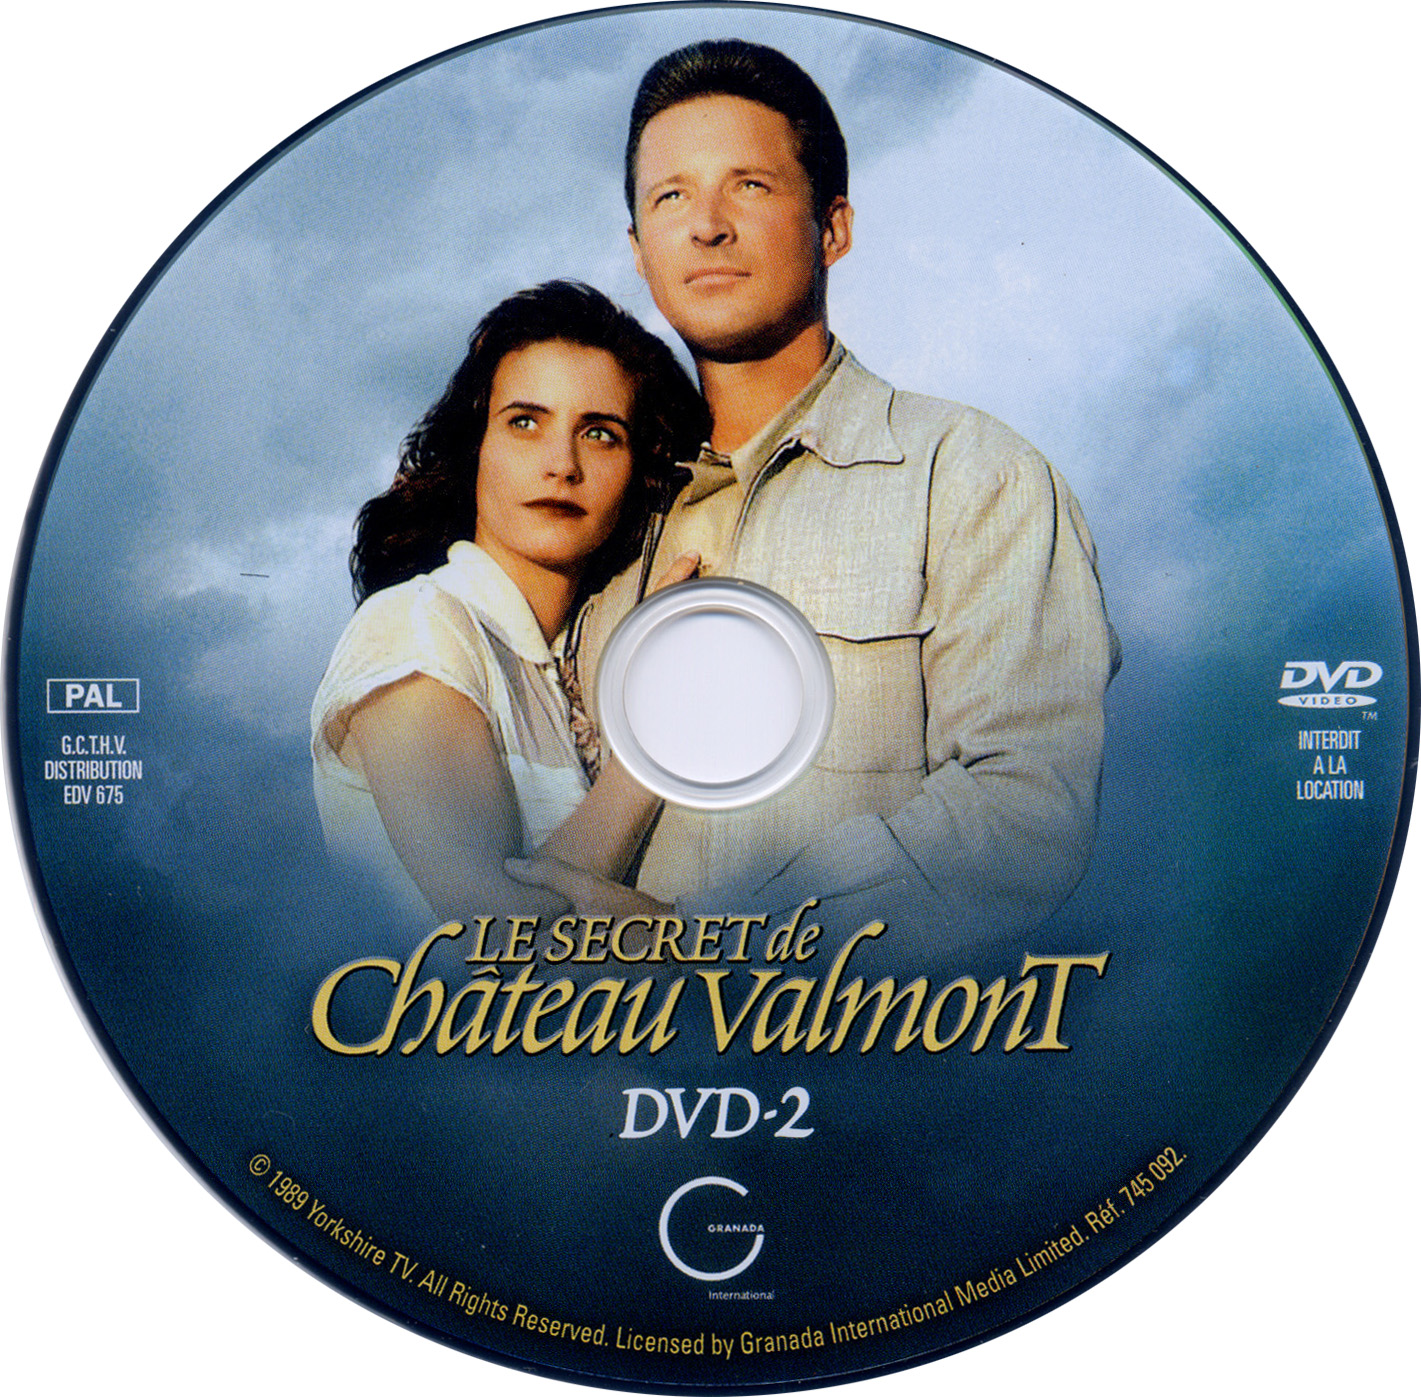 Le secret de chateau Valmont dvd 2